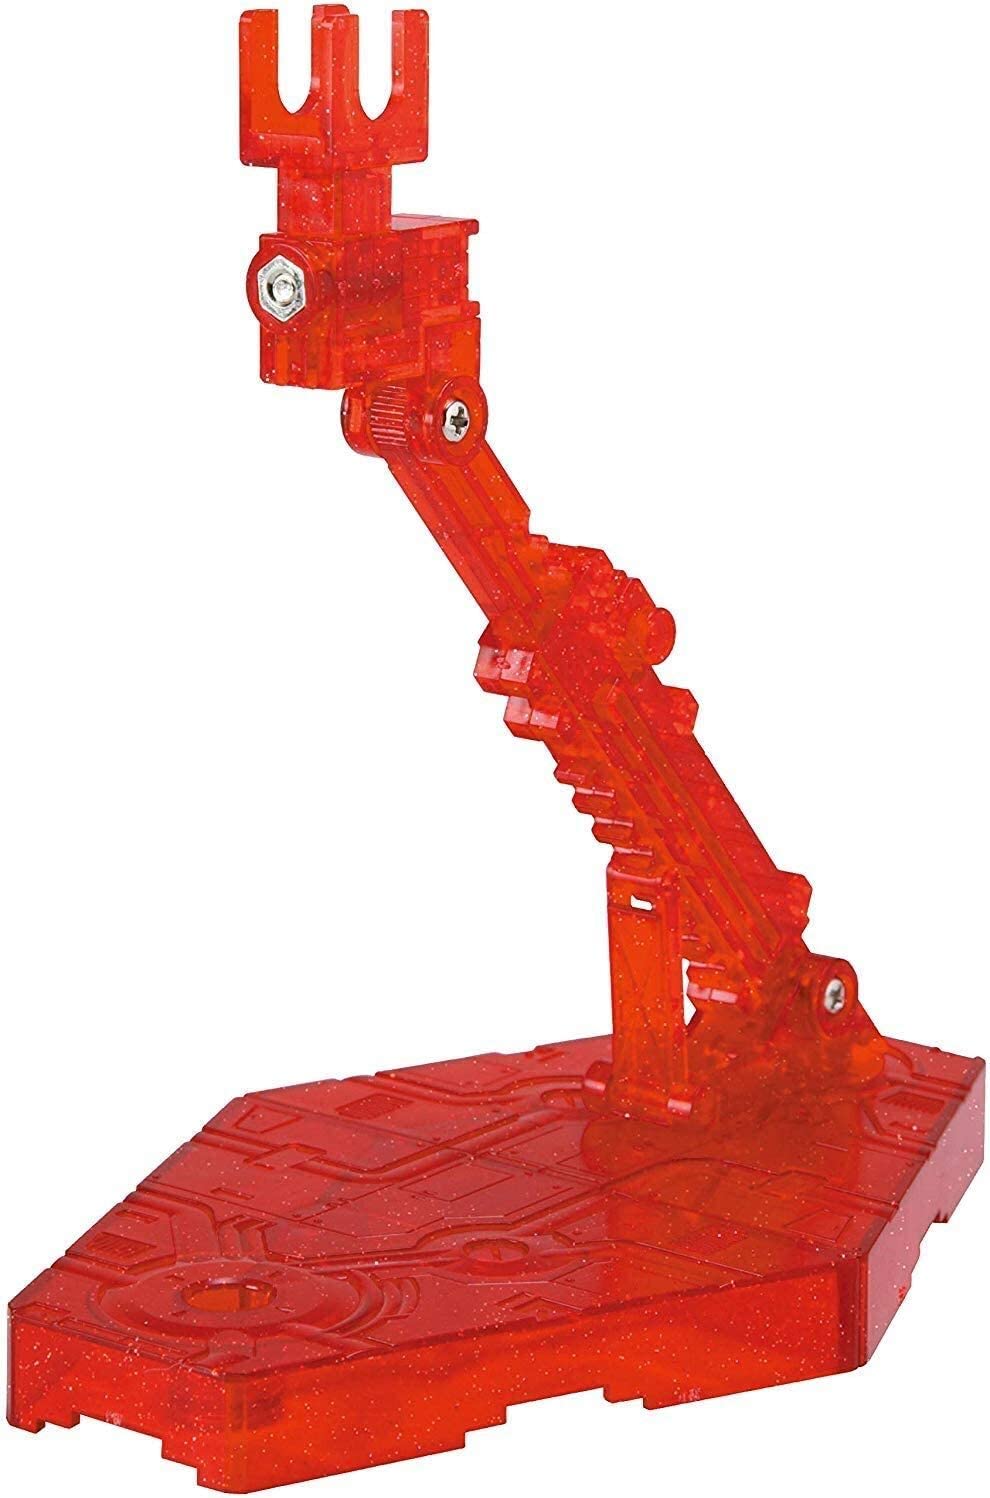 鋼彈gundam組合模型 HGUC 1/144專用腳架 (紅)